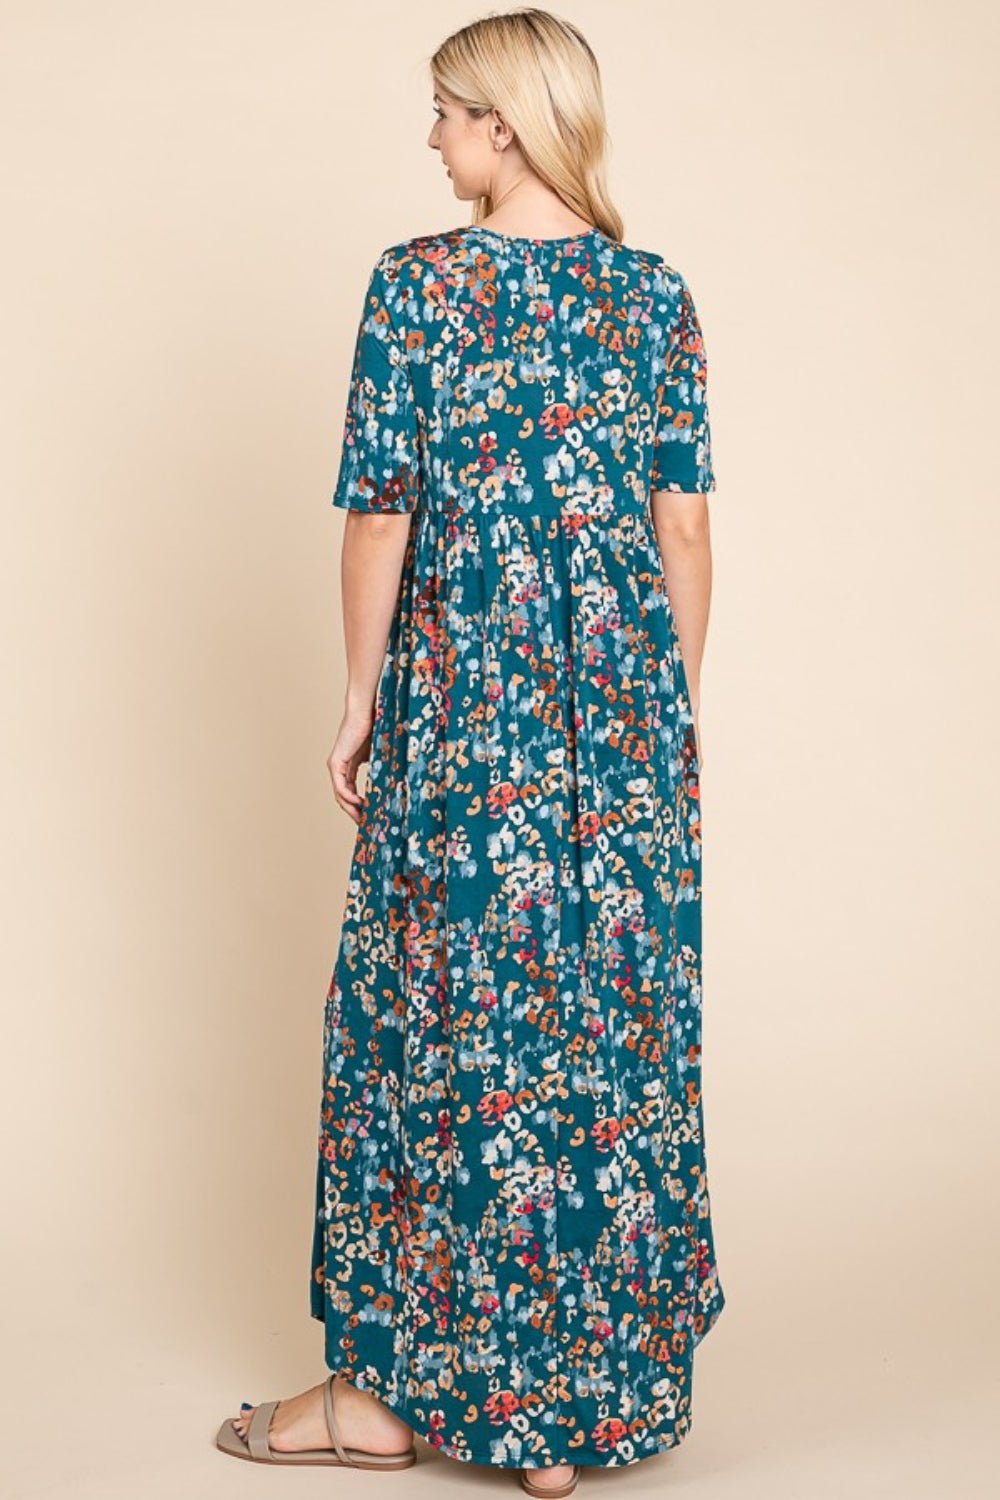 BOMBOM Printed Shirred Maxi Dress - Admiresty